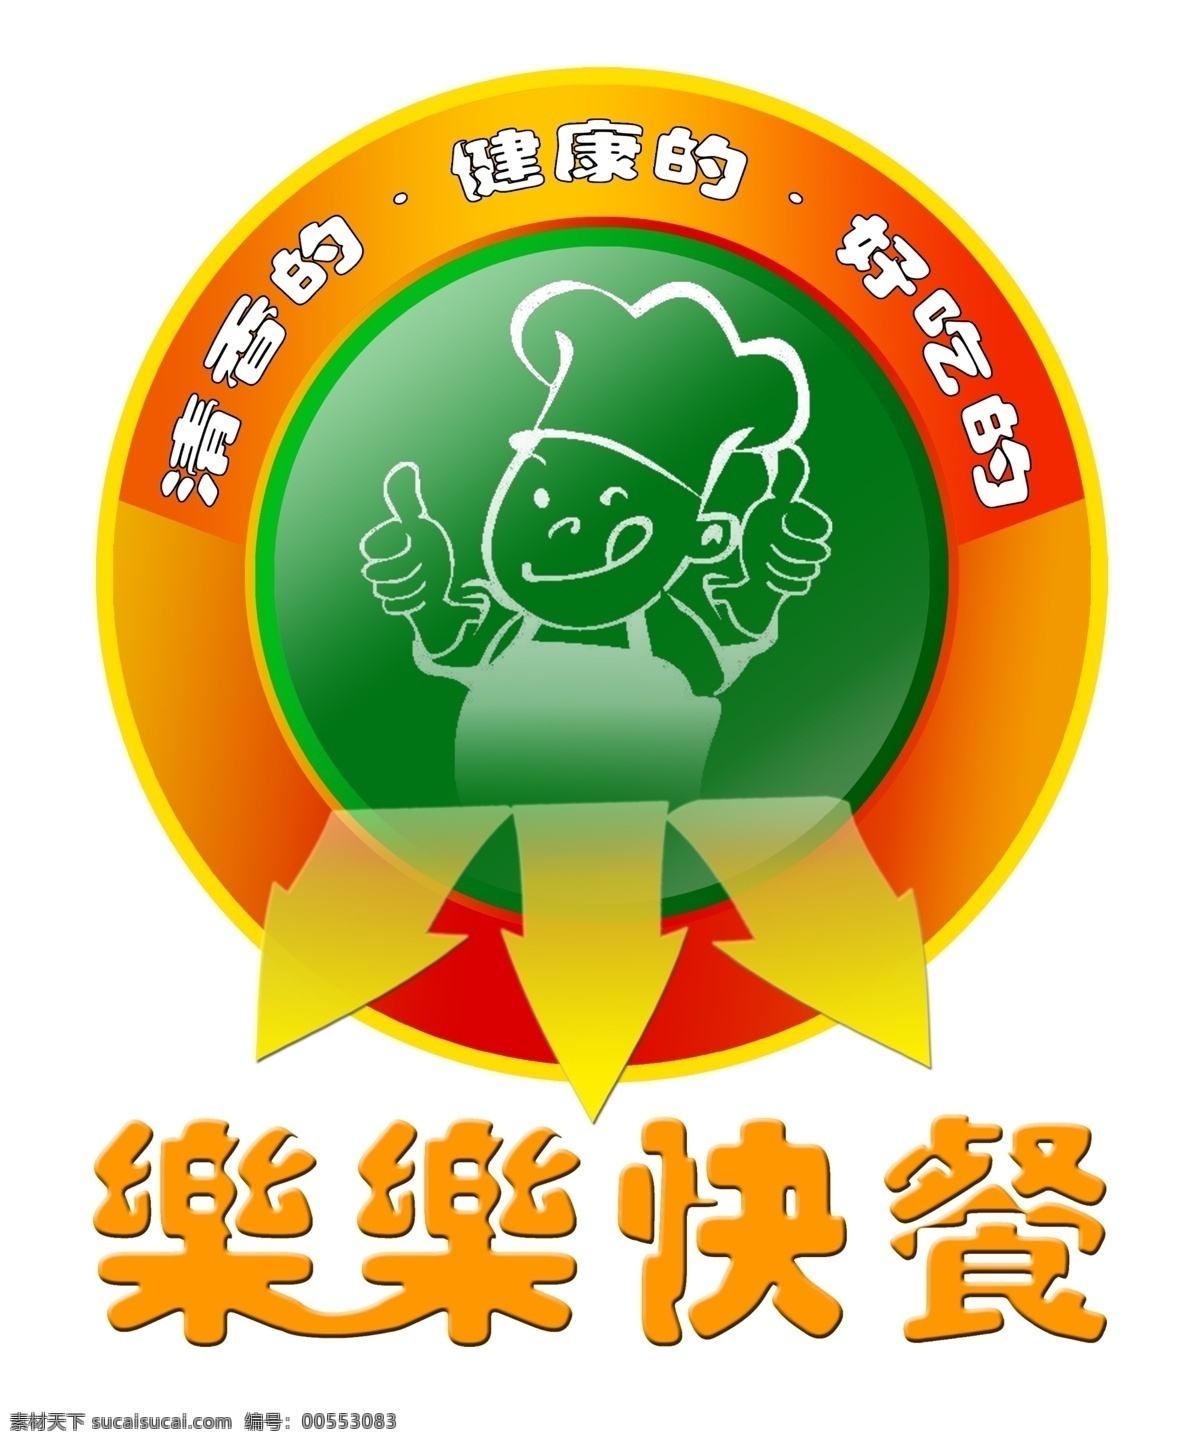 乐 快餐 ps 分层 乐乐 乐乐快餐 快餐店标 店标 快餐店 logo 快餐logo 中式快餐 源文件